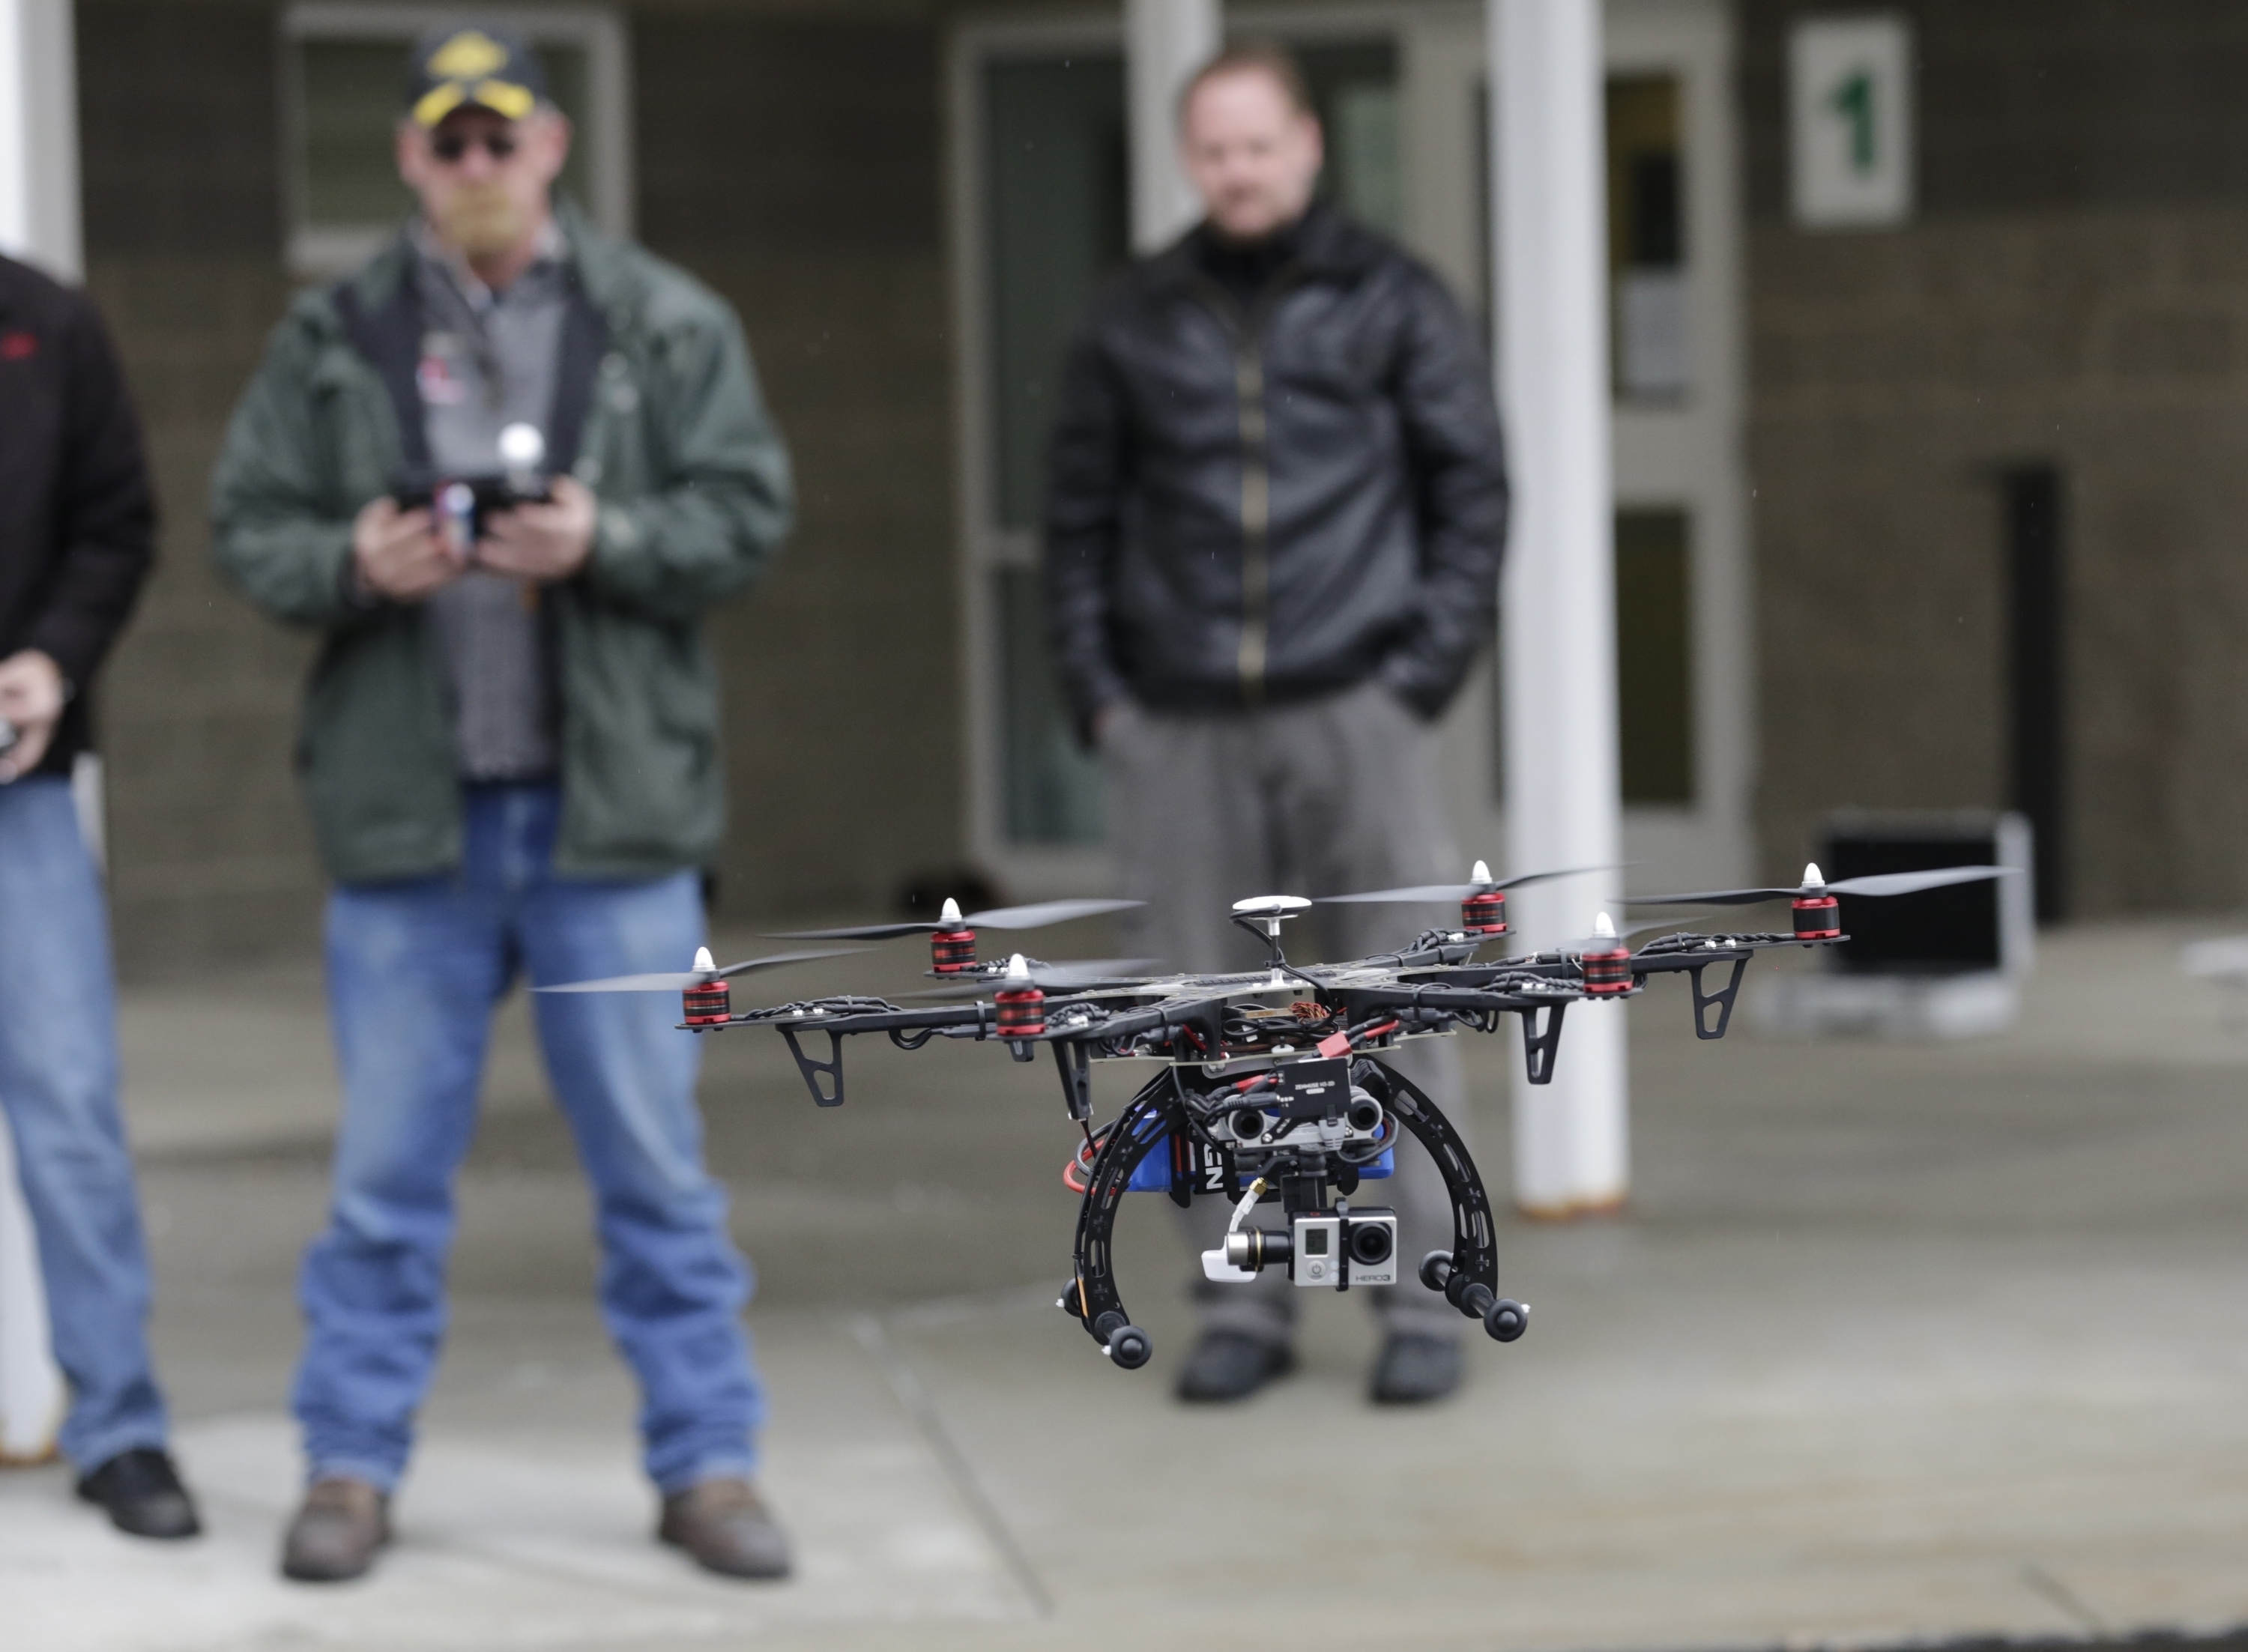 Άνθρωποι και υπηρεσίες υποκαθίστανται από τα drones, μια αγορά $127 δις